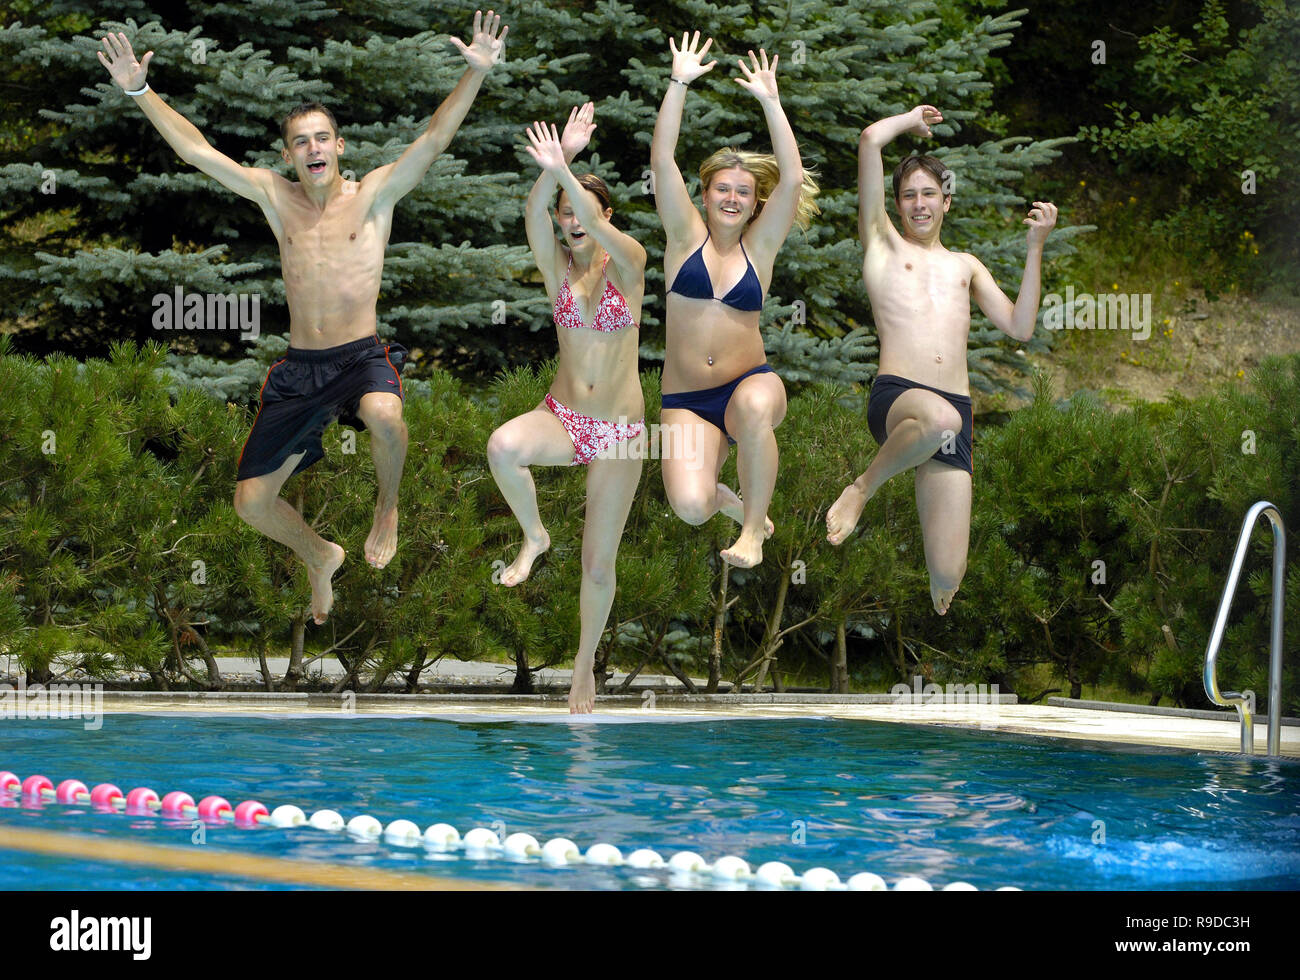 14.07.2005, Zwickau, Saxony, Germany - Schueler springen zur Erfrischung in ein Schwimmbecken. 0UX050714D120CAROEX.JPG [MODEL RELEASE: NO, PROPERTY RE Stock Photo